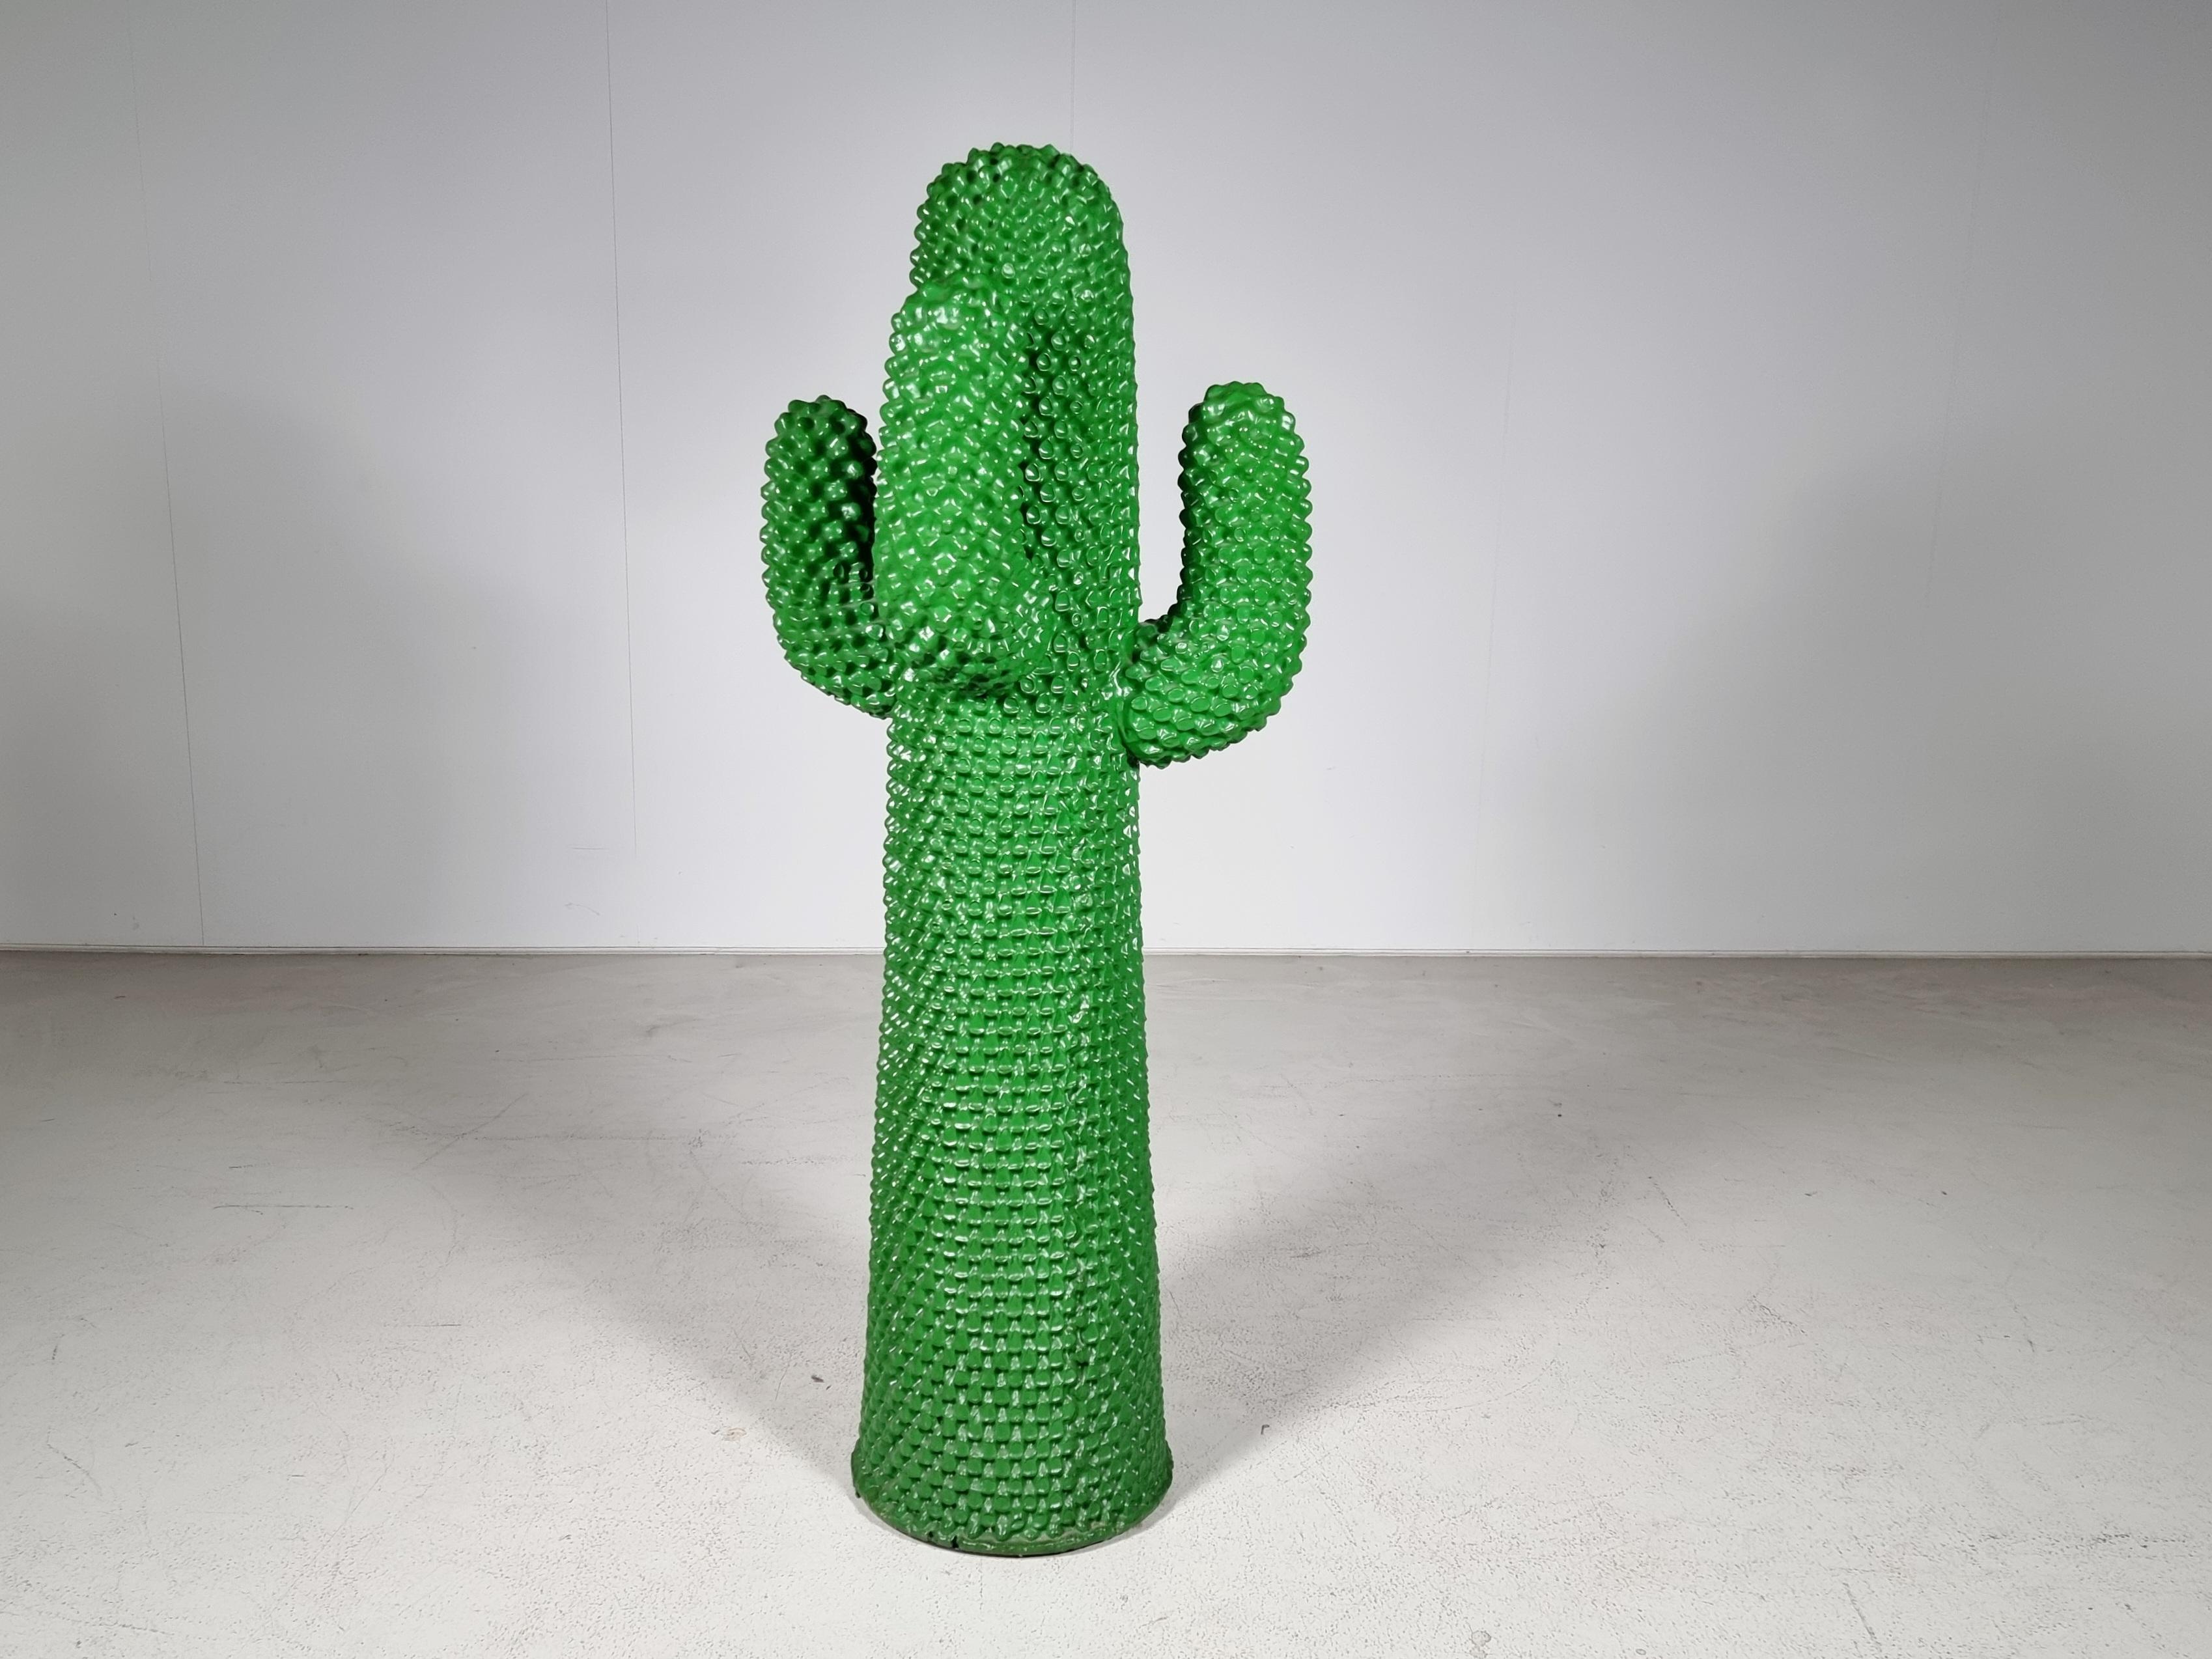 Ikonischer Kaktus-Garderobenständer in sehr gutem Originalzustand. Signiert #964/2000 Gufram Multiples '86. Der Gufram-Kaktus ist in mehreren Museumssammlungen auf der ganzen Welt vertreten und in mehreren Publikationen über dekorative Kunst des 20.